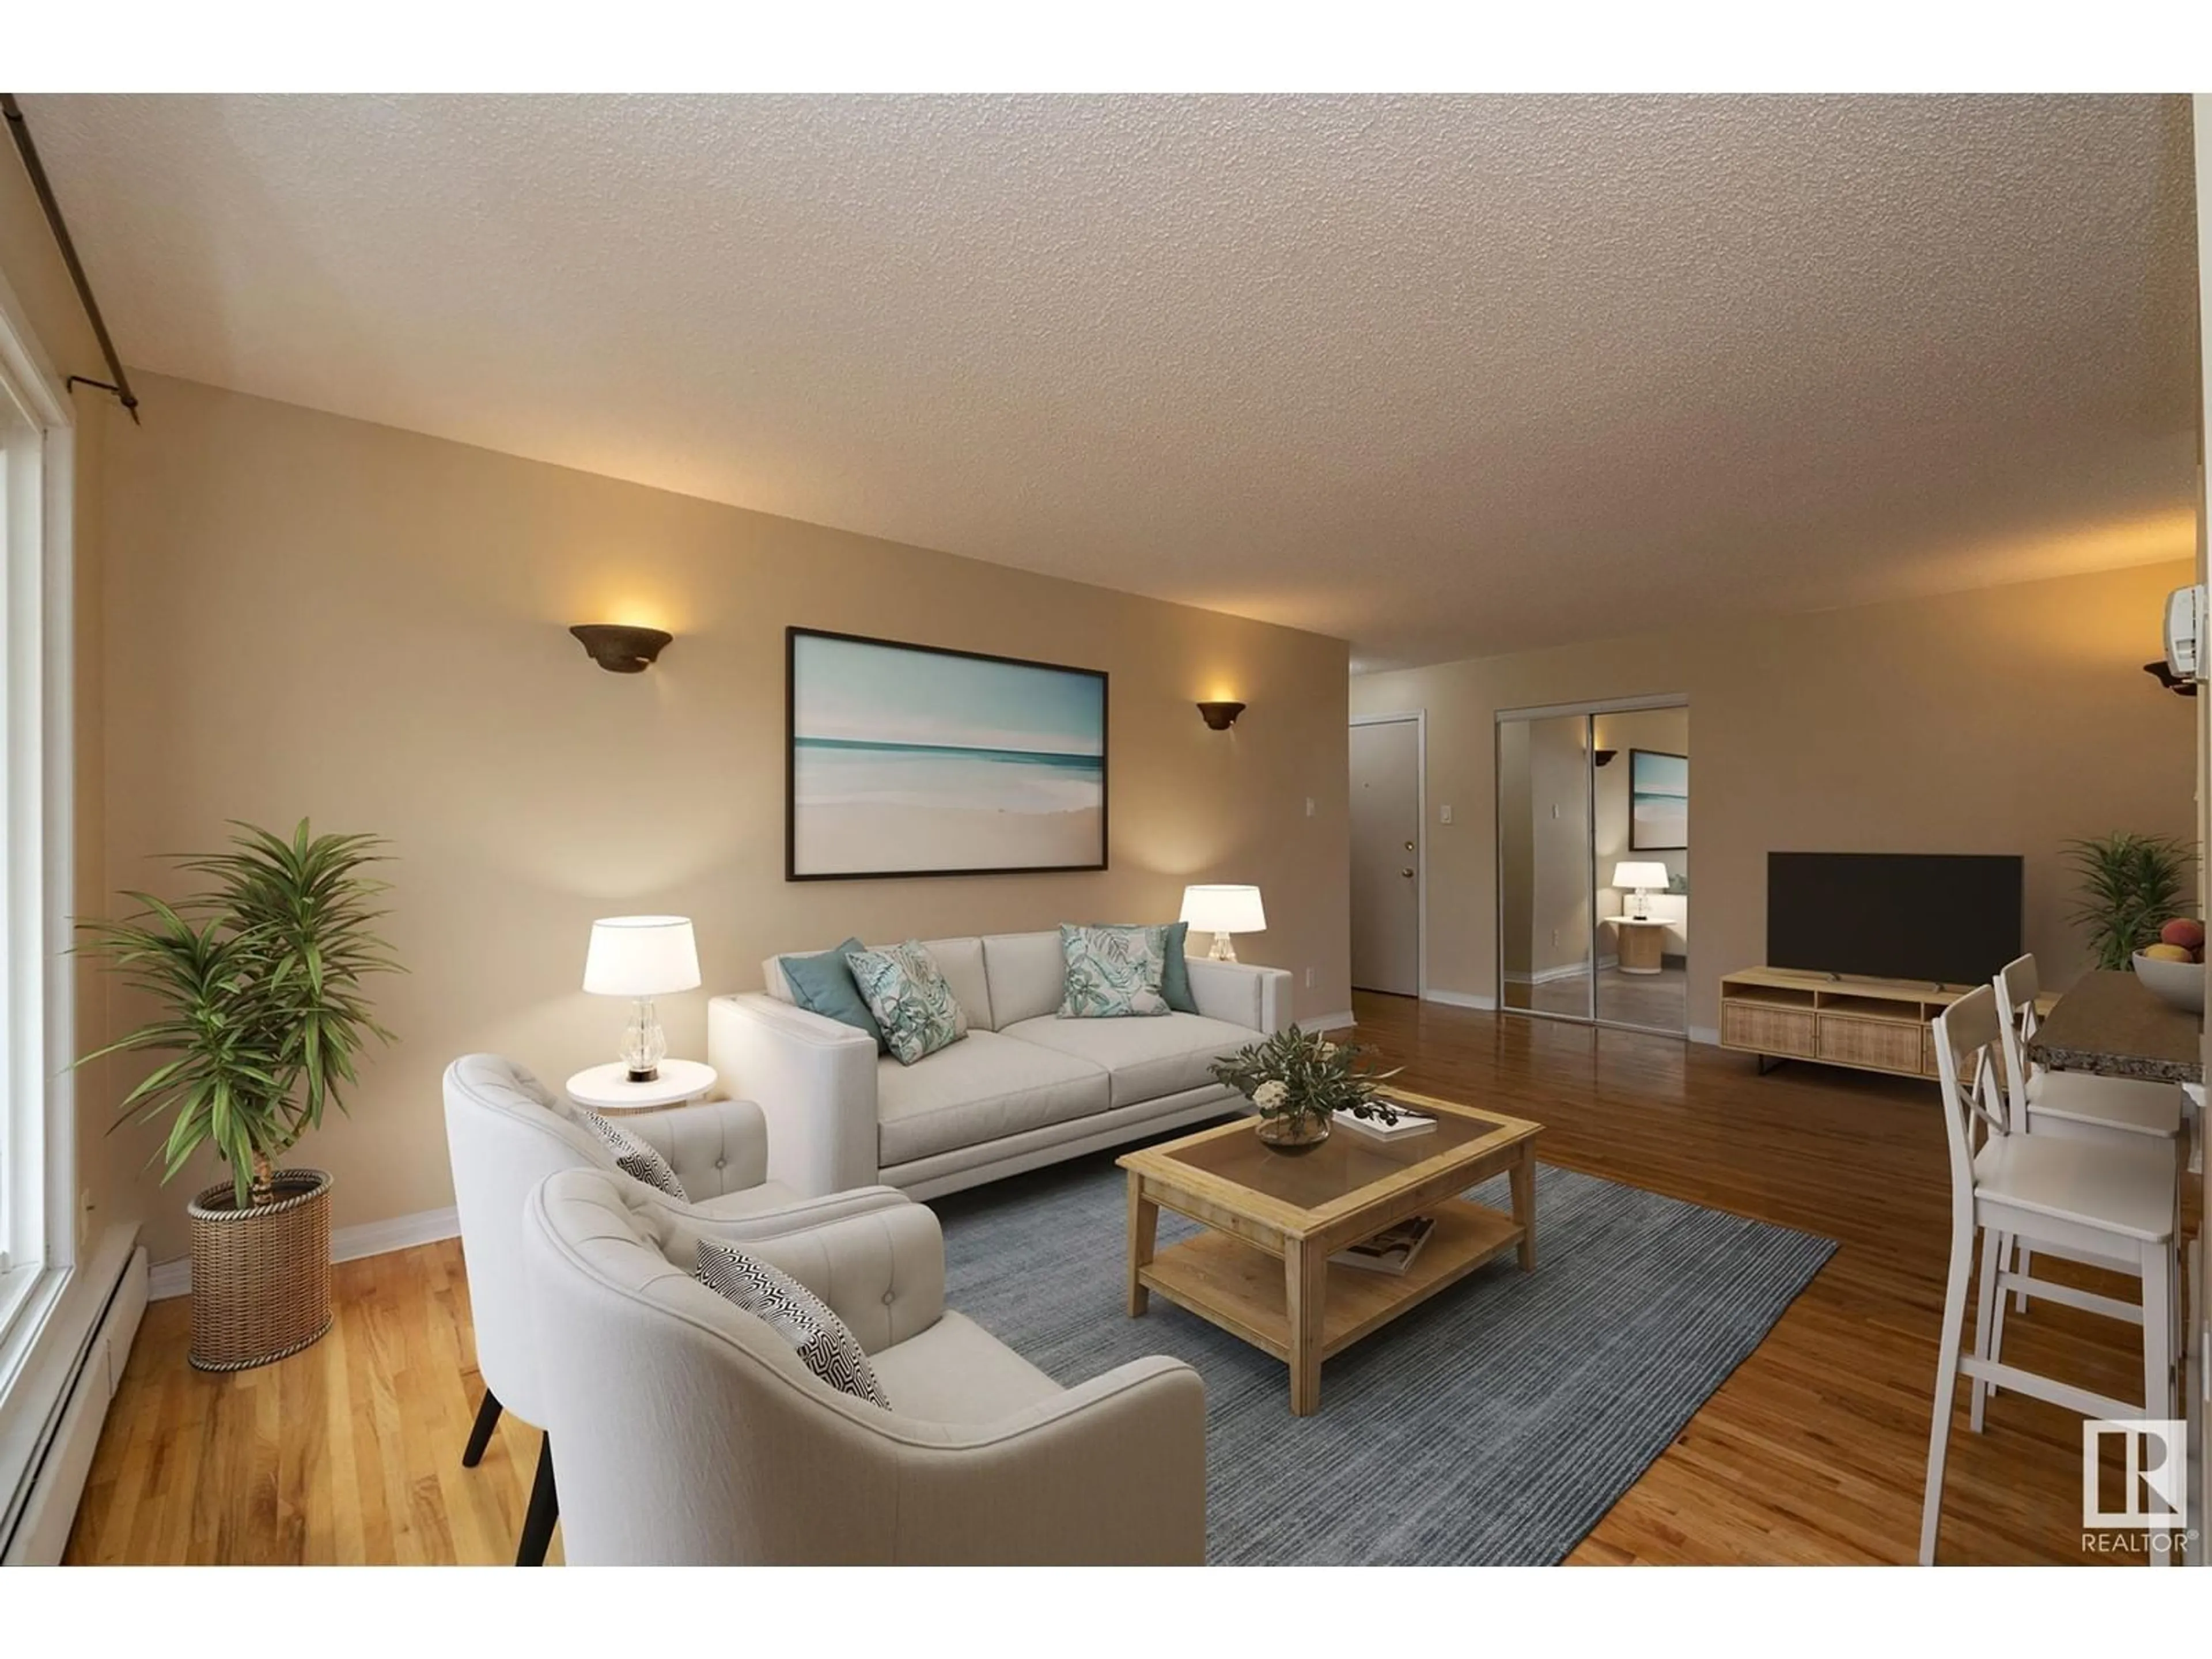 Living room for #211 11217 103 AV NW, Edmonton Alberta T5K2V9